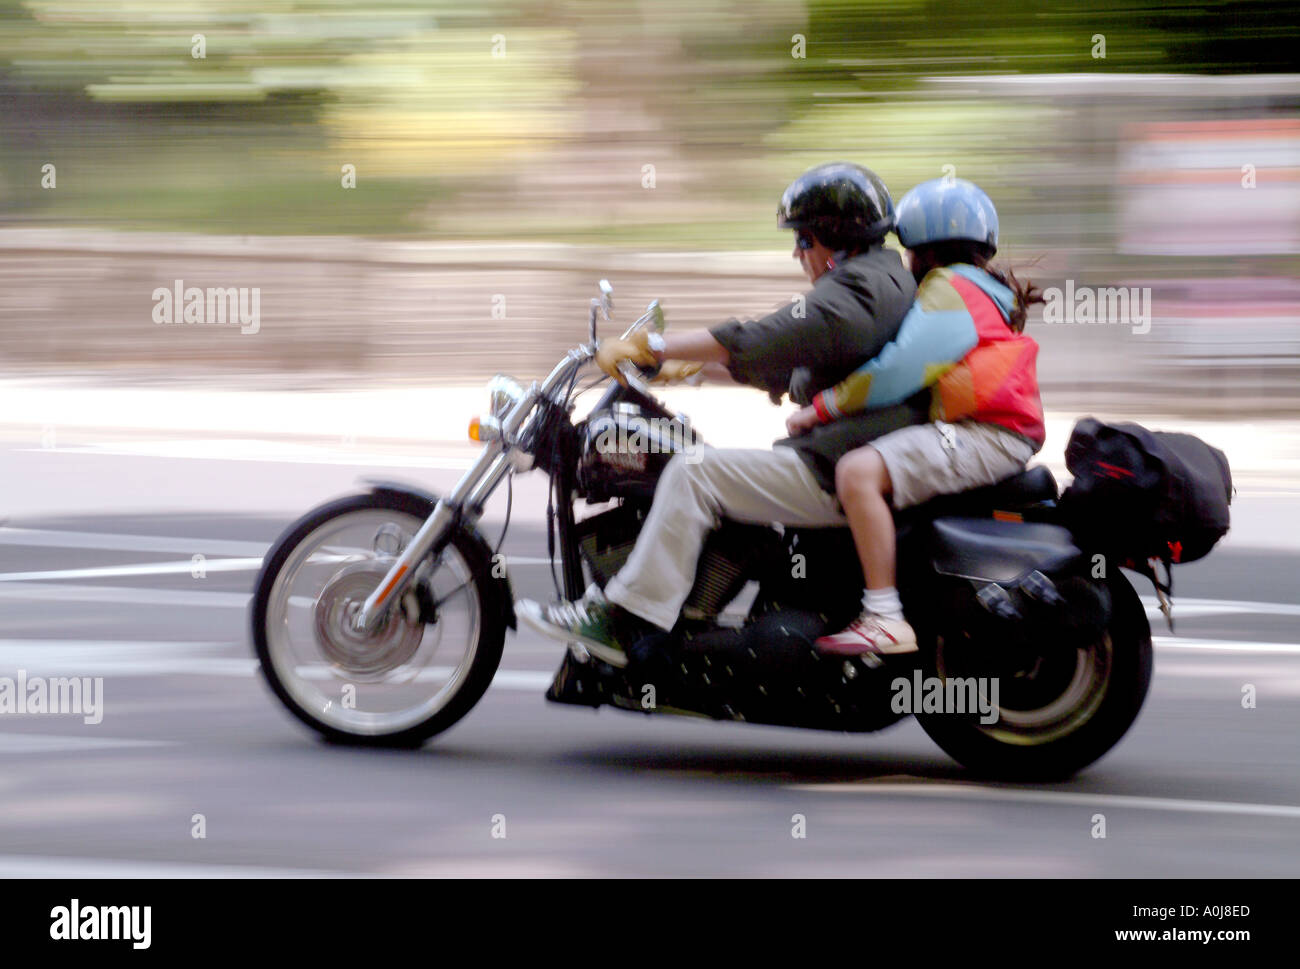 Ein Motorradfahrer und Beifahrer in London. Stockfoto